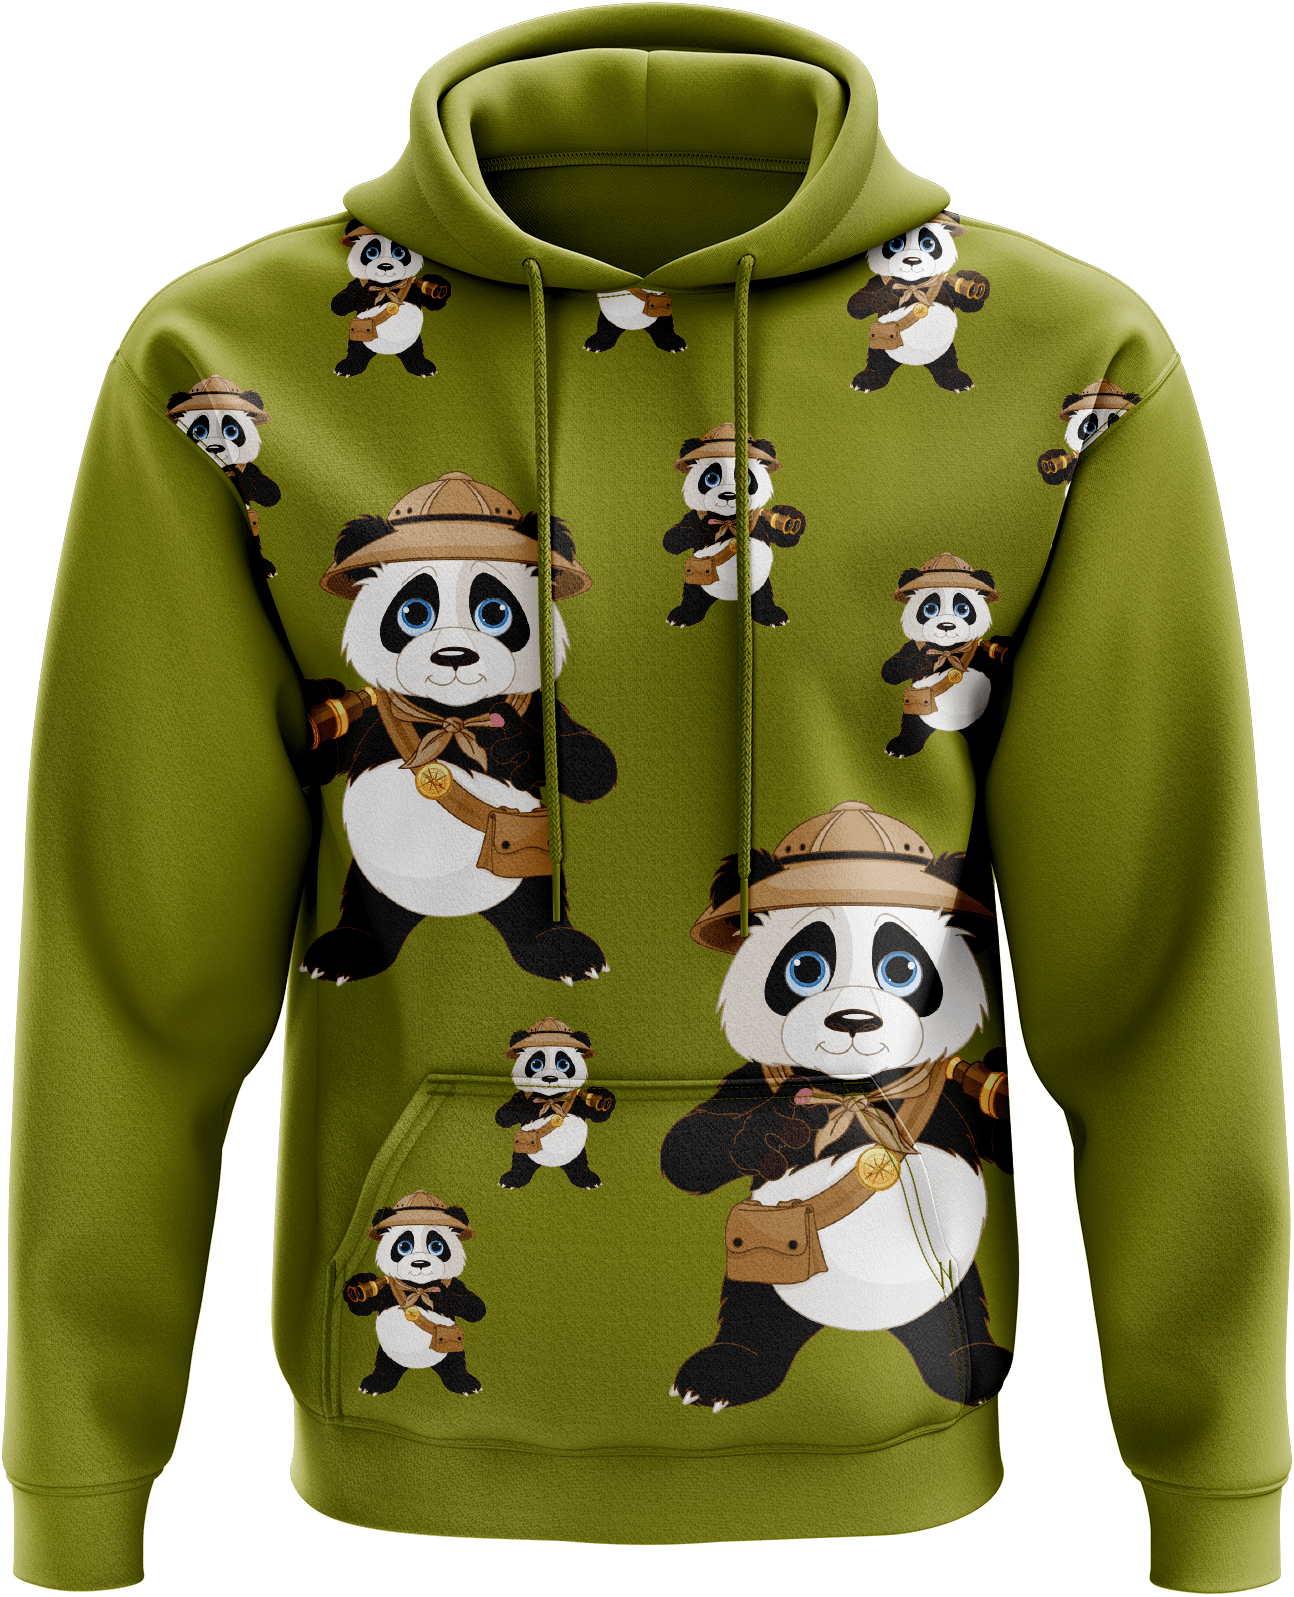 Explorer Panda Hoodies - fungear.com.au